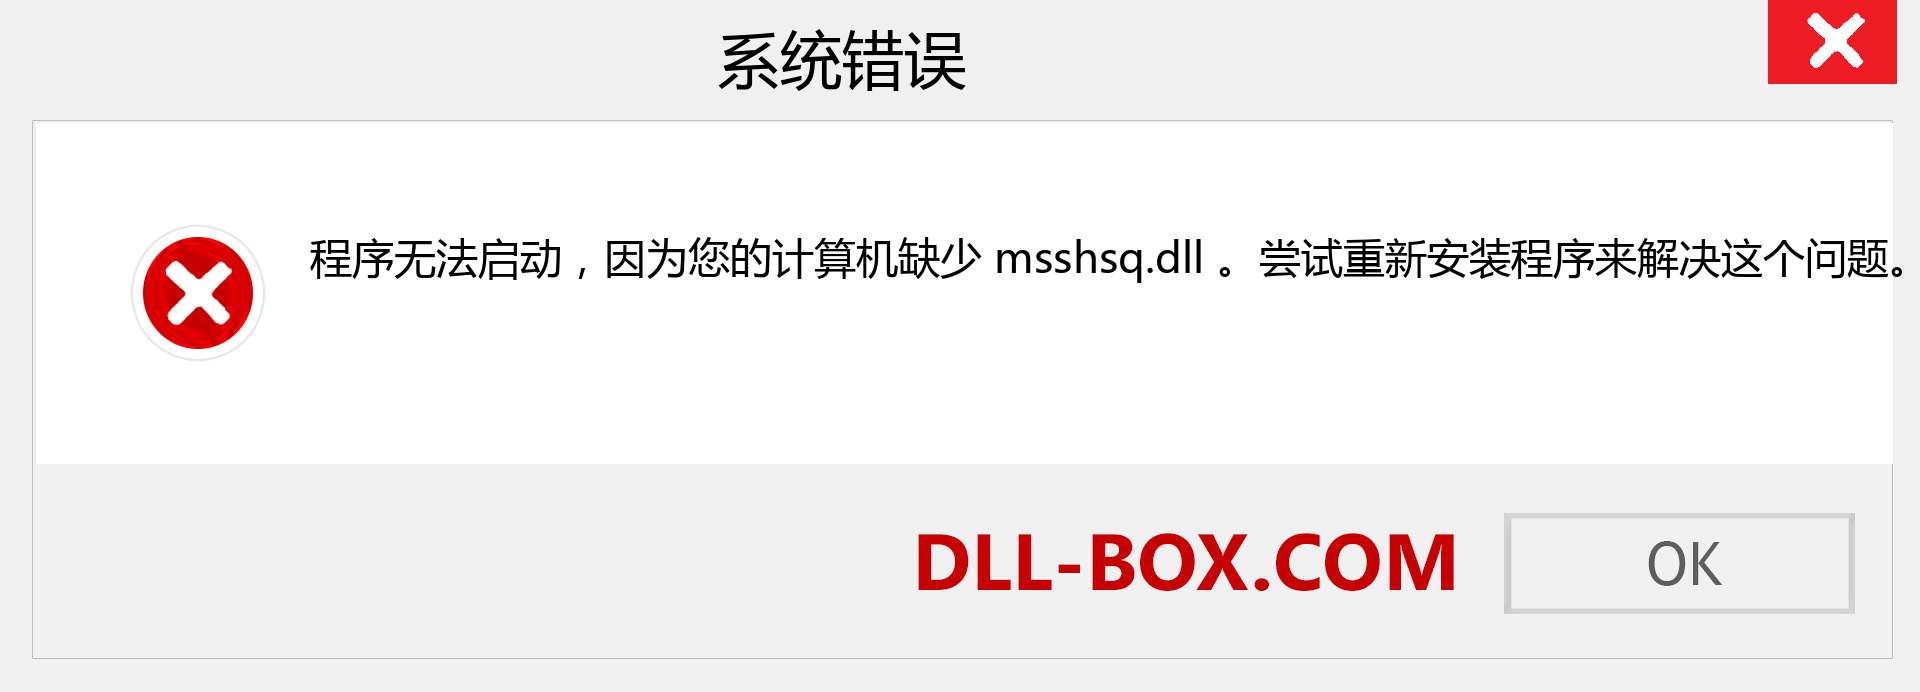 msshsq.dll 文件丢失？。 适用于 Windows 7、8、10 的下载 - 修复 Windows、照片、图像上的 msshsq dll 丢失错误